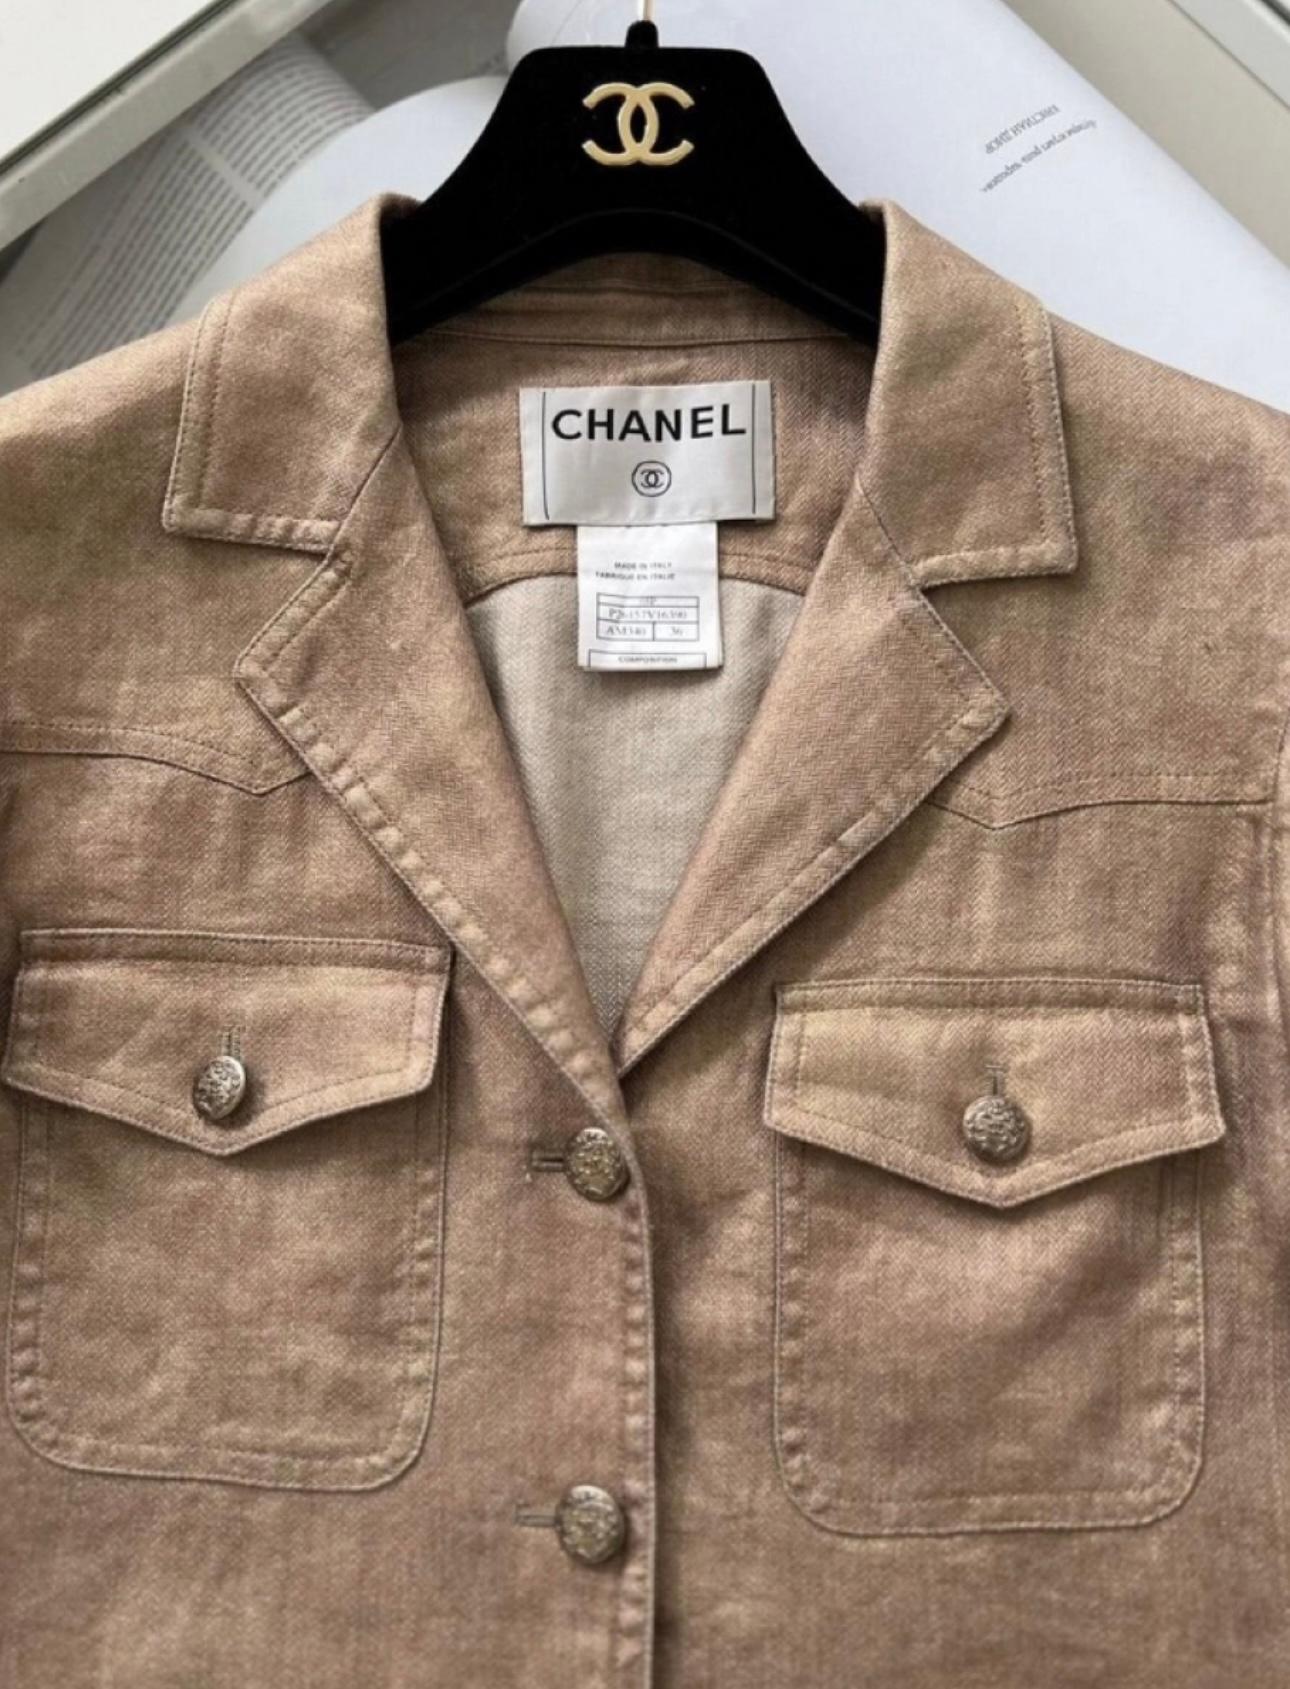 Chanel Jacke aus Leinen und Seide mit CC-Logo-Knöpfen.
Ikonische Silhouette mit 4 Klappentaschen
Größenbezeichnung 36 FR. Tadelloser Zustand.